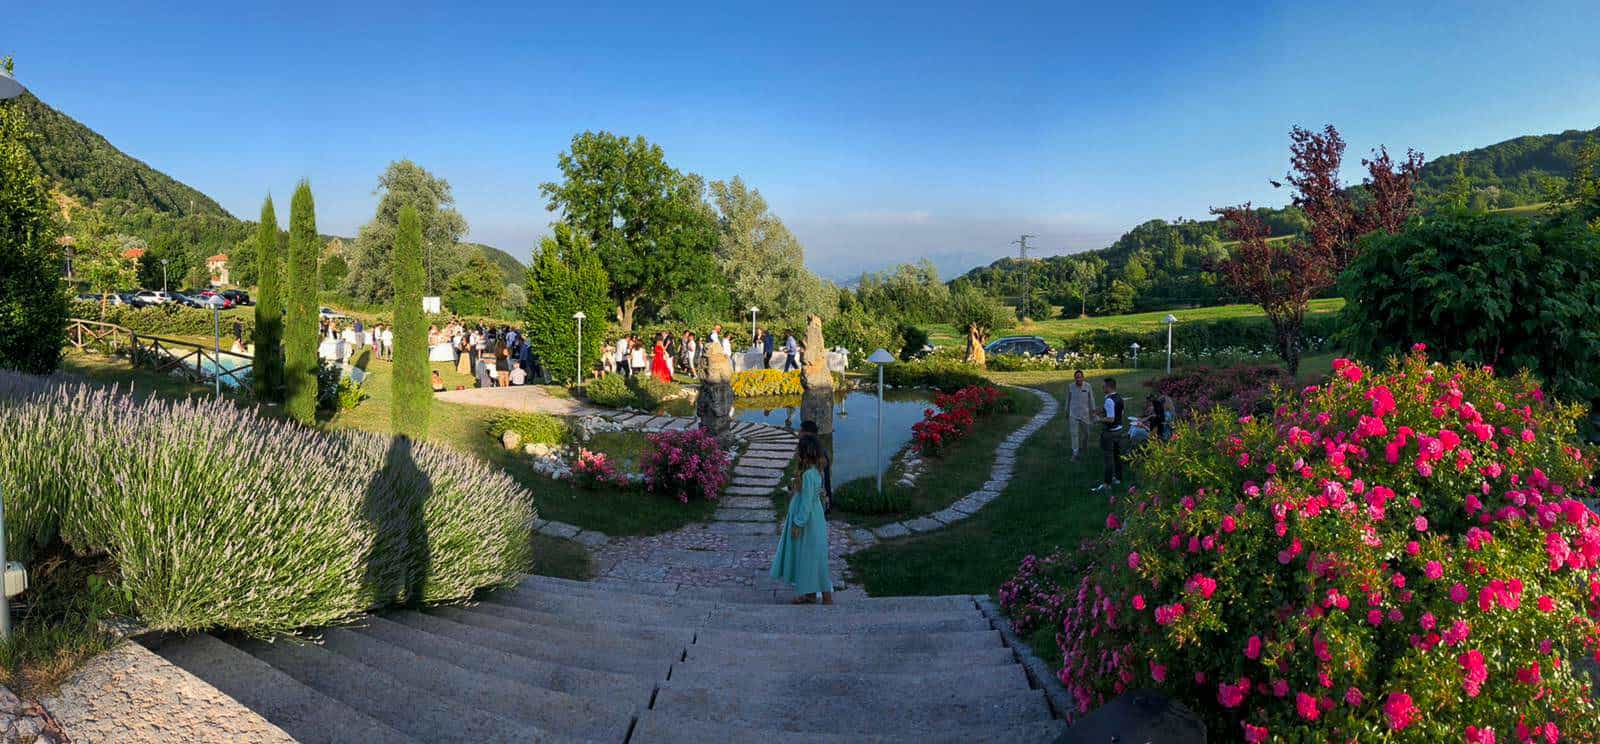 Matrimonio nelle colline Romagnole a Villa San Marco - Villagrande di Montecopiolo